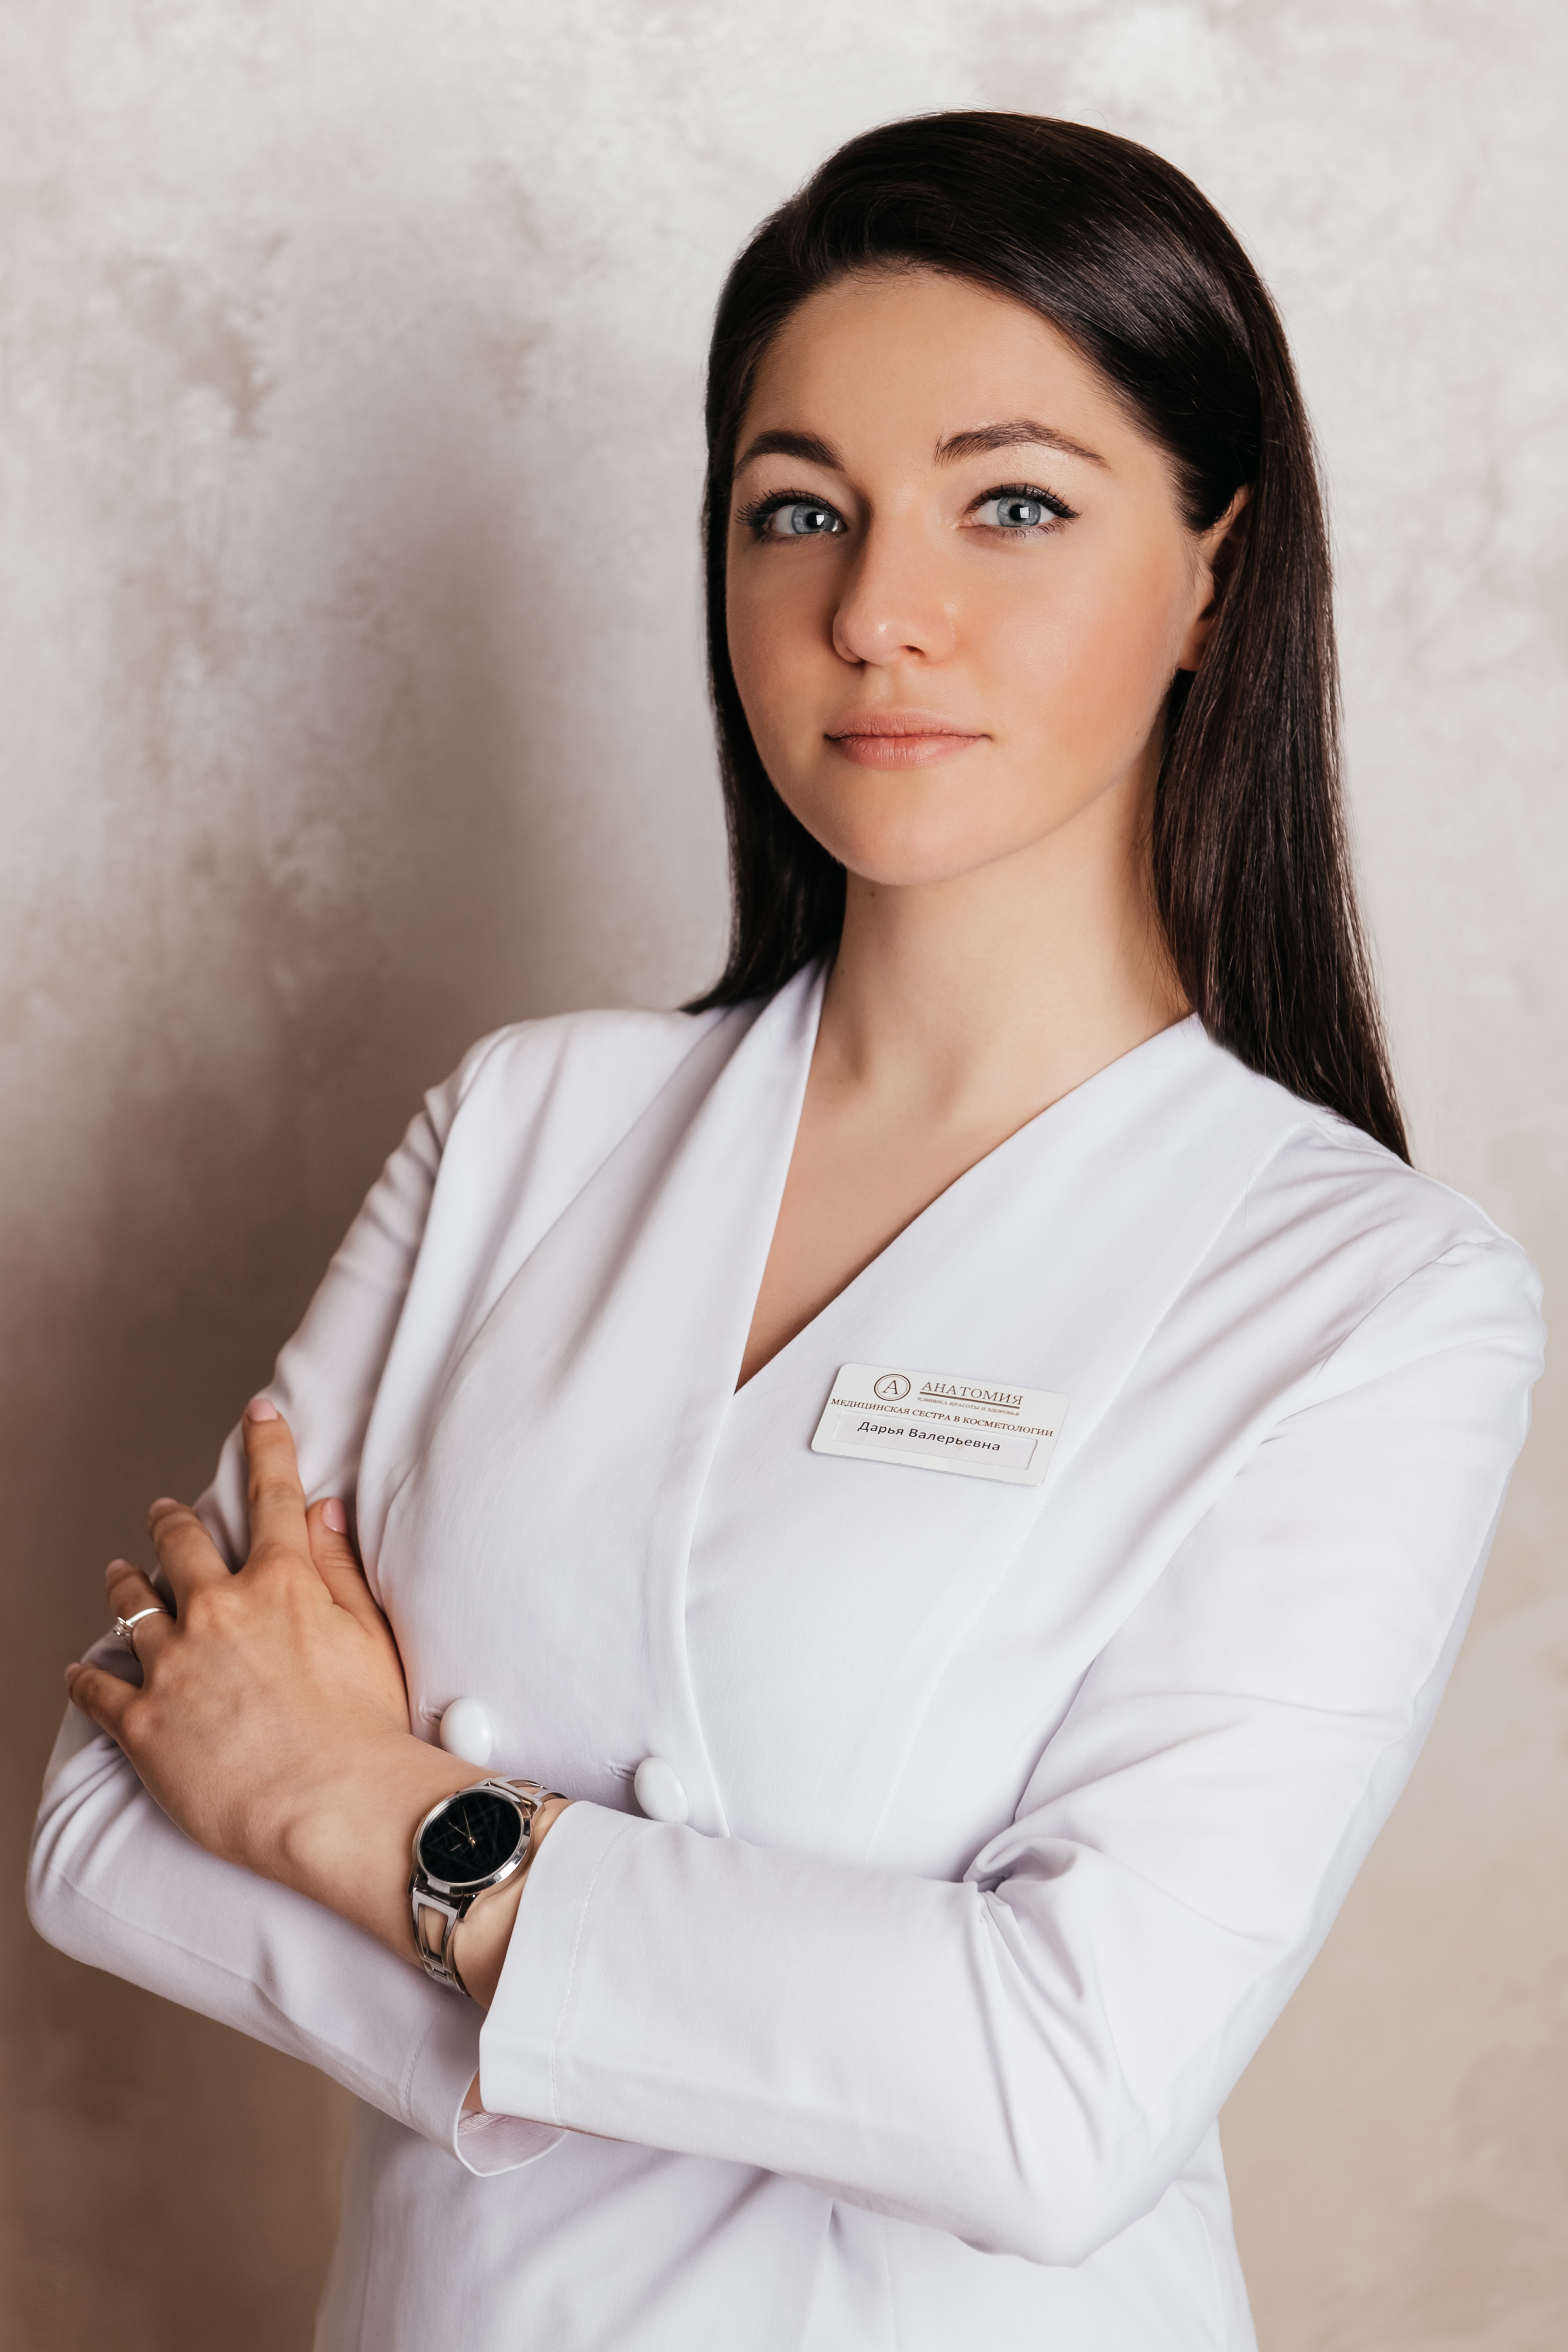 Специалист по лазерной эпиляции клиники "Анатомия" на Бауманской, Пономарева Дарья Валерьевна